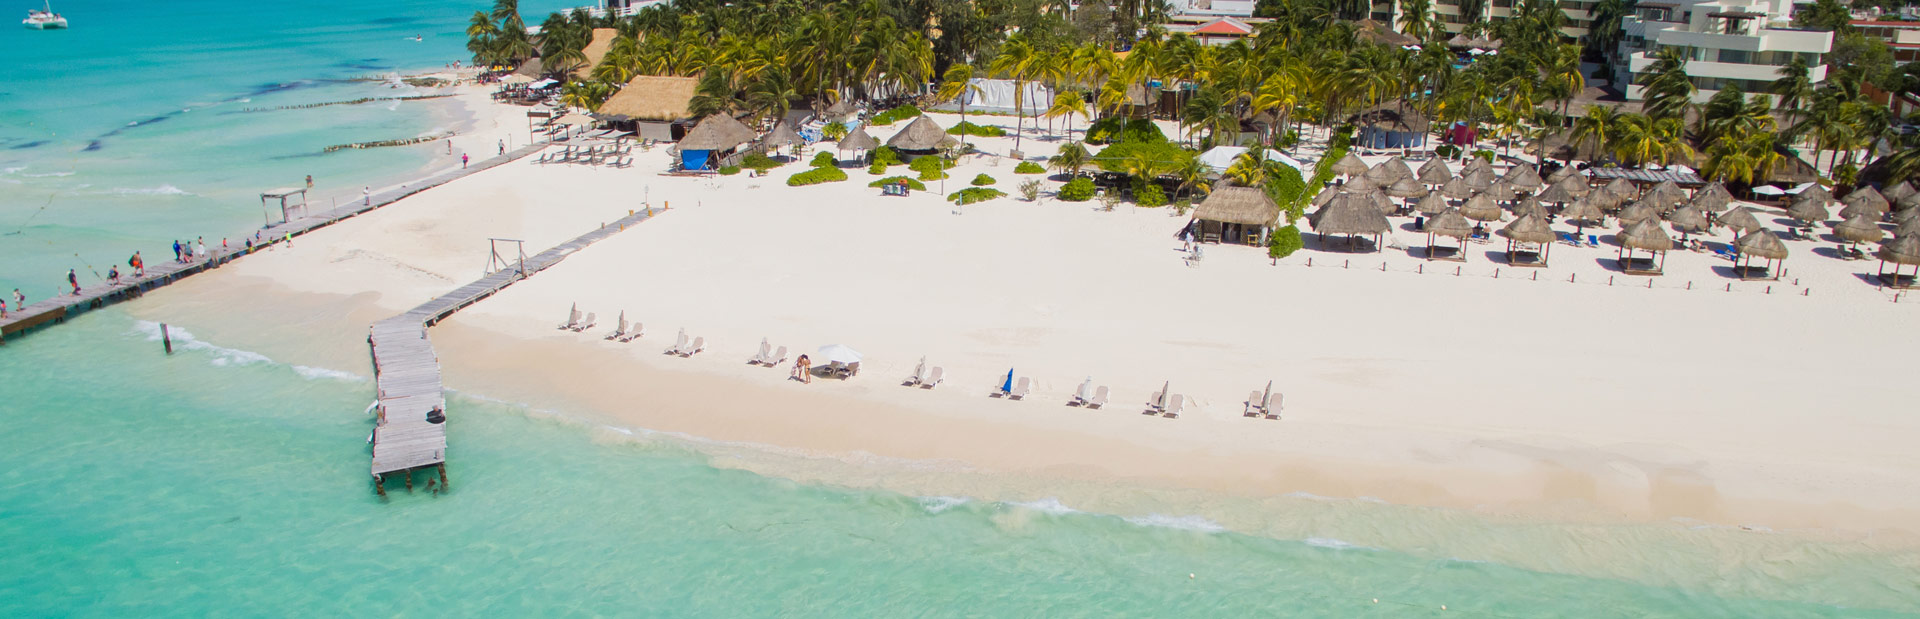 Playa Norte en Isla mujeres a vista de dron